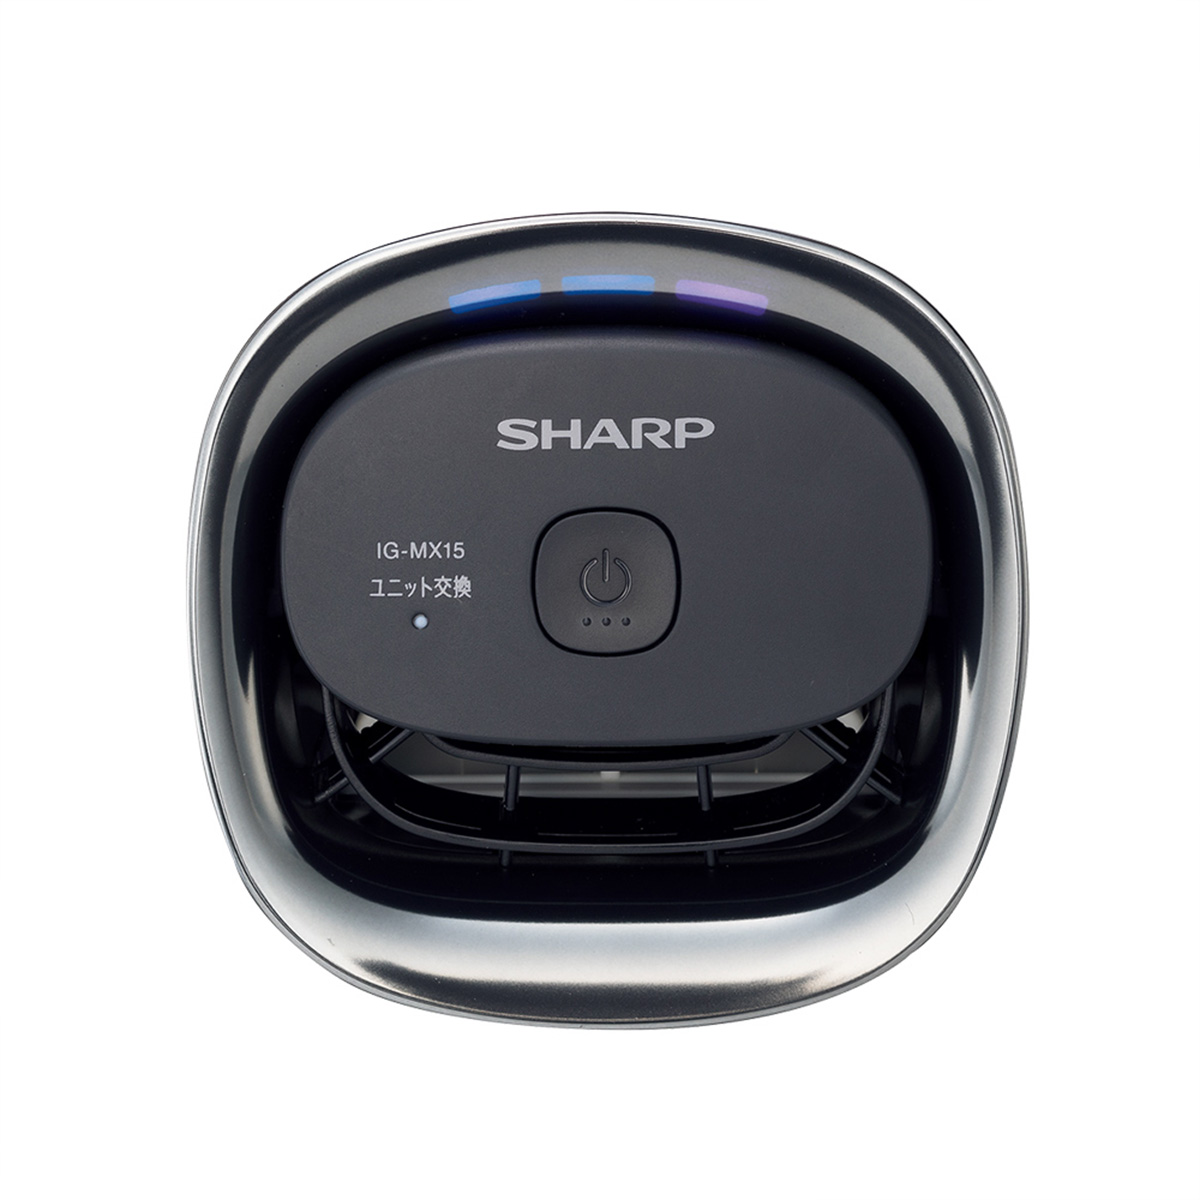 ひかりＴＶショッピング シャープ イオン発生機 プラズマクラスター NEXT カップホルダータイプ カーアダプター USBケーブル 対応 ホワイト  IG-MX15-W｜SHARP